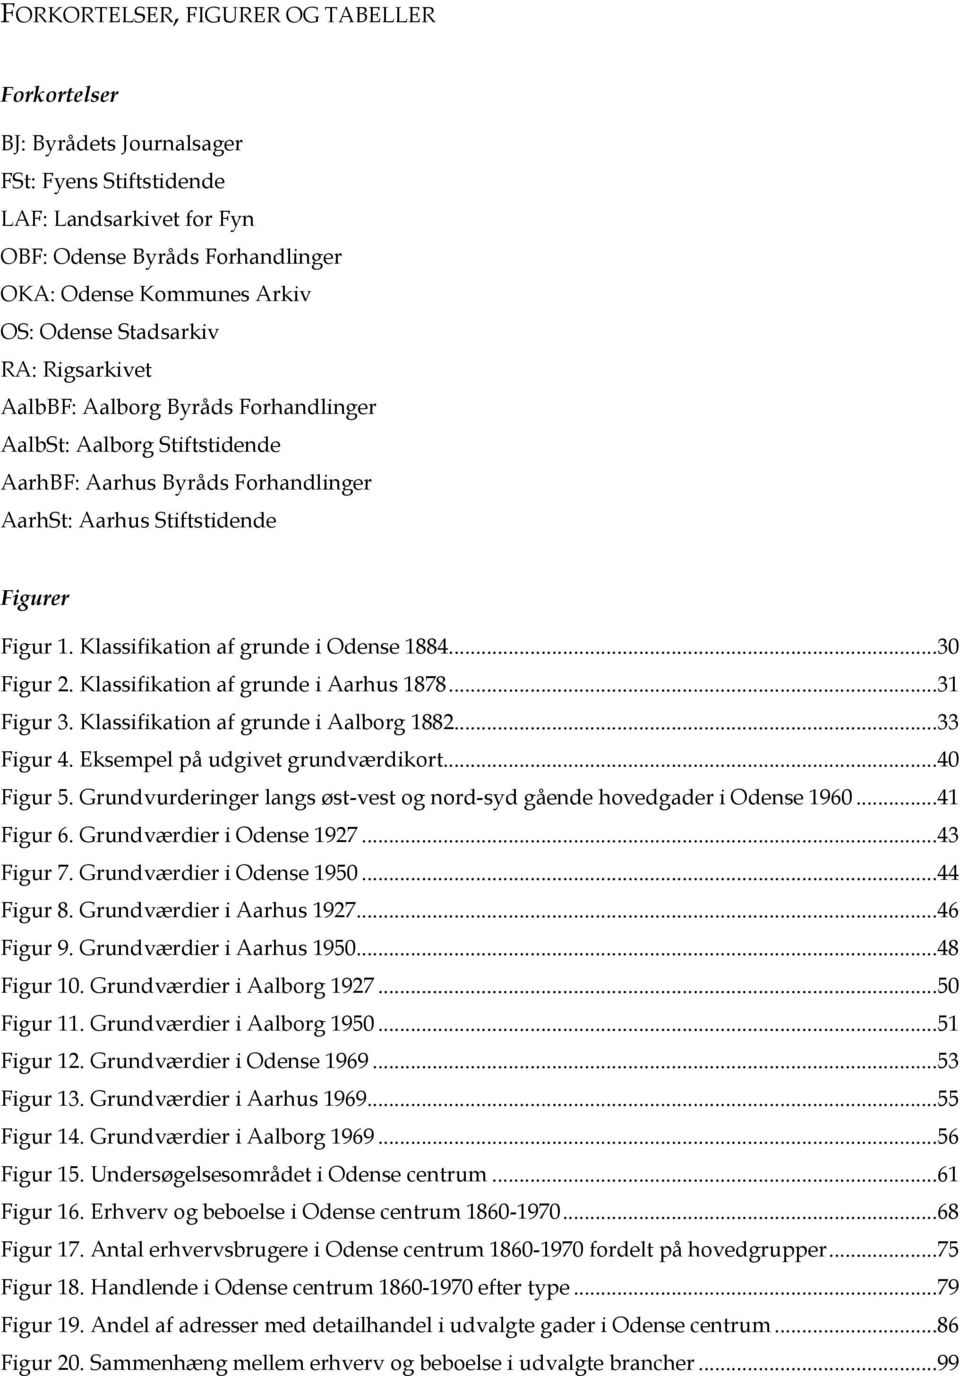 Klassifikation af grunde i Odense 1884...30 Figur 2. Klassifikation af grunde i Aarhus 1878...31 Figur 3. Klassifikation af grunde i Aalborg 1882...33 Figur 4. Eksempel på udgivet grundværdikort.